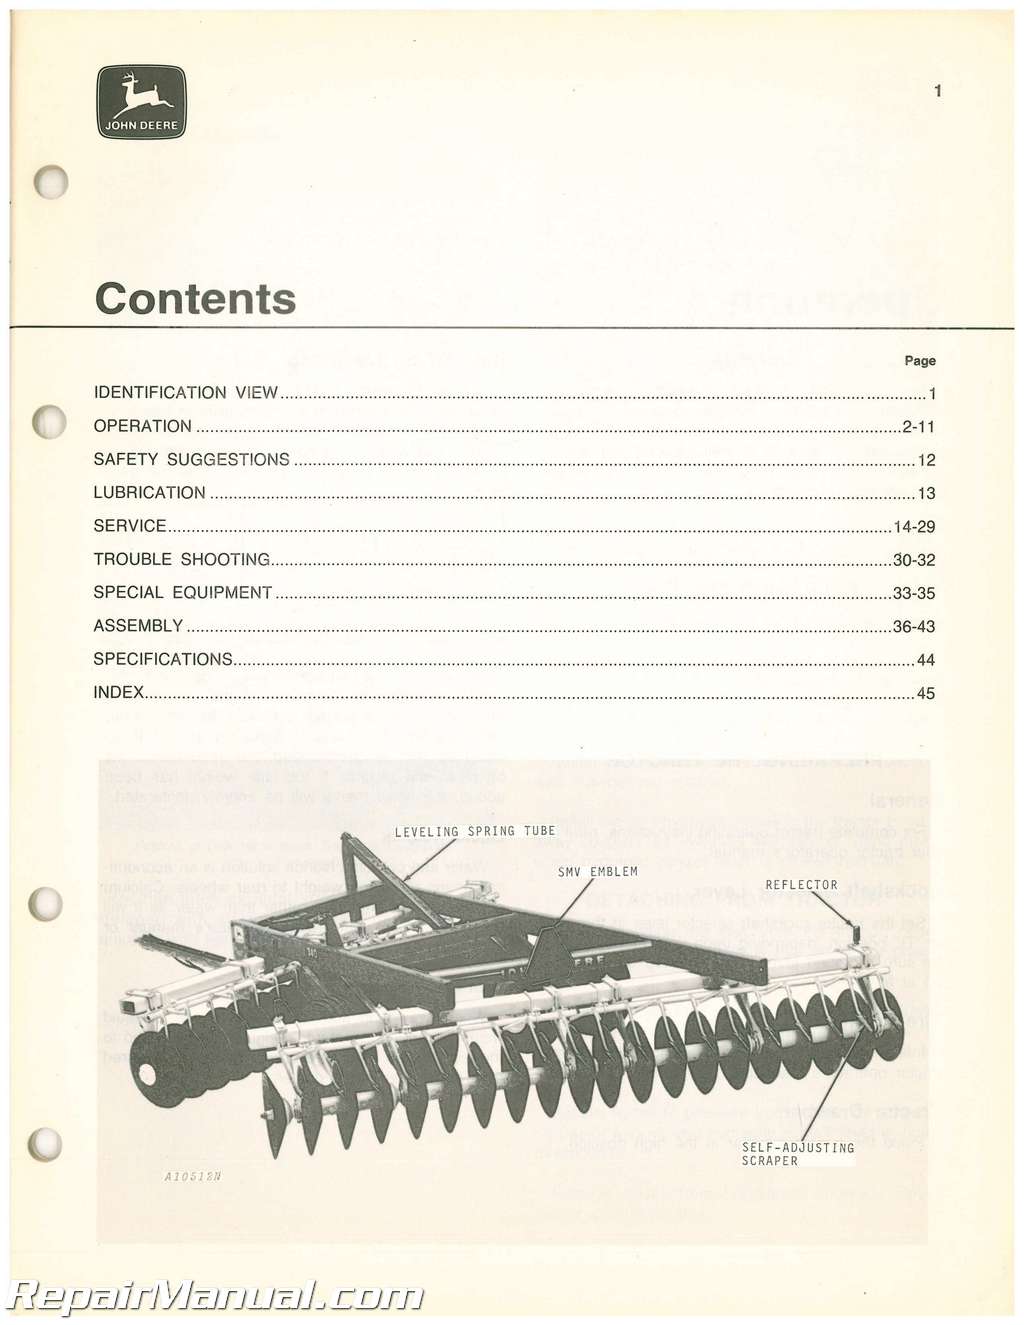 Used John Deere 340 Offset Disk Operators Manual